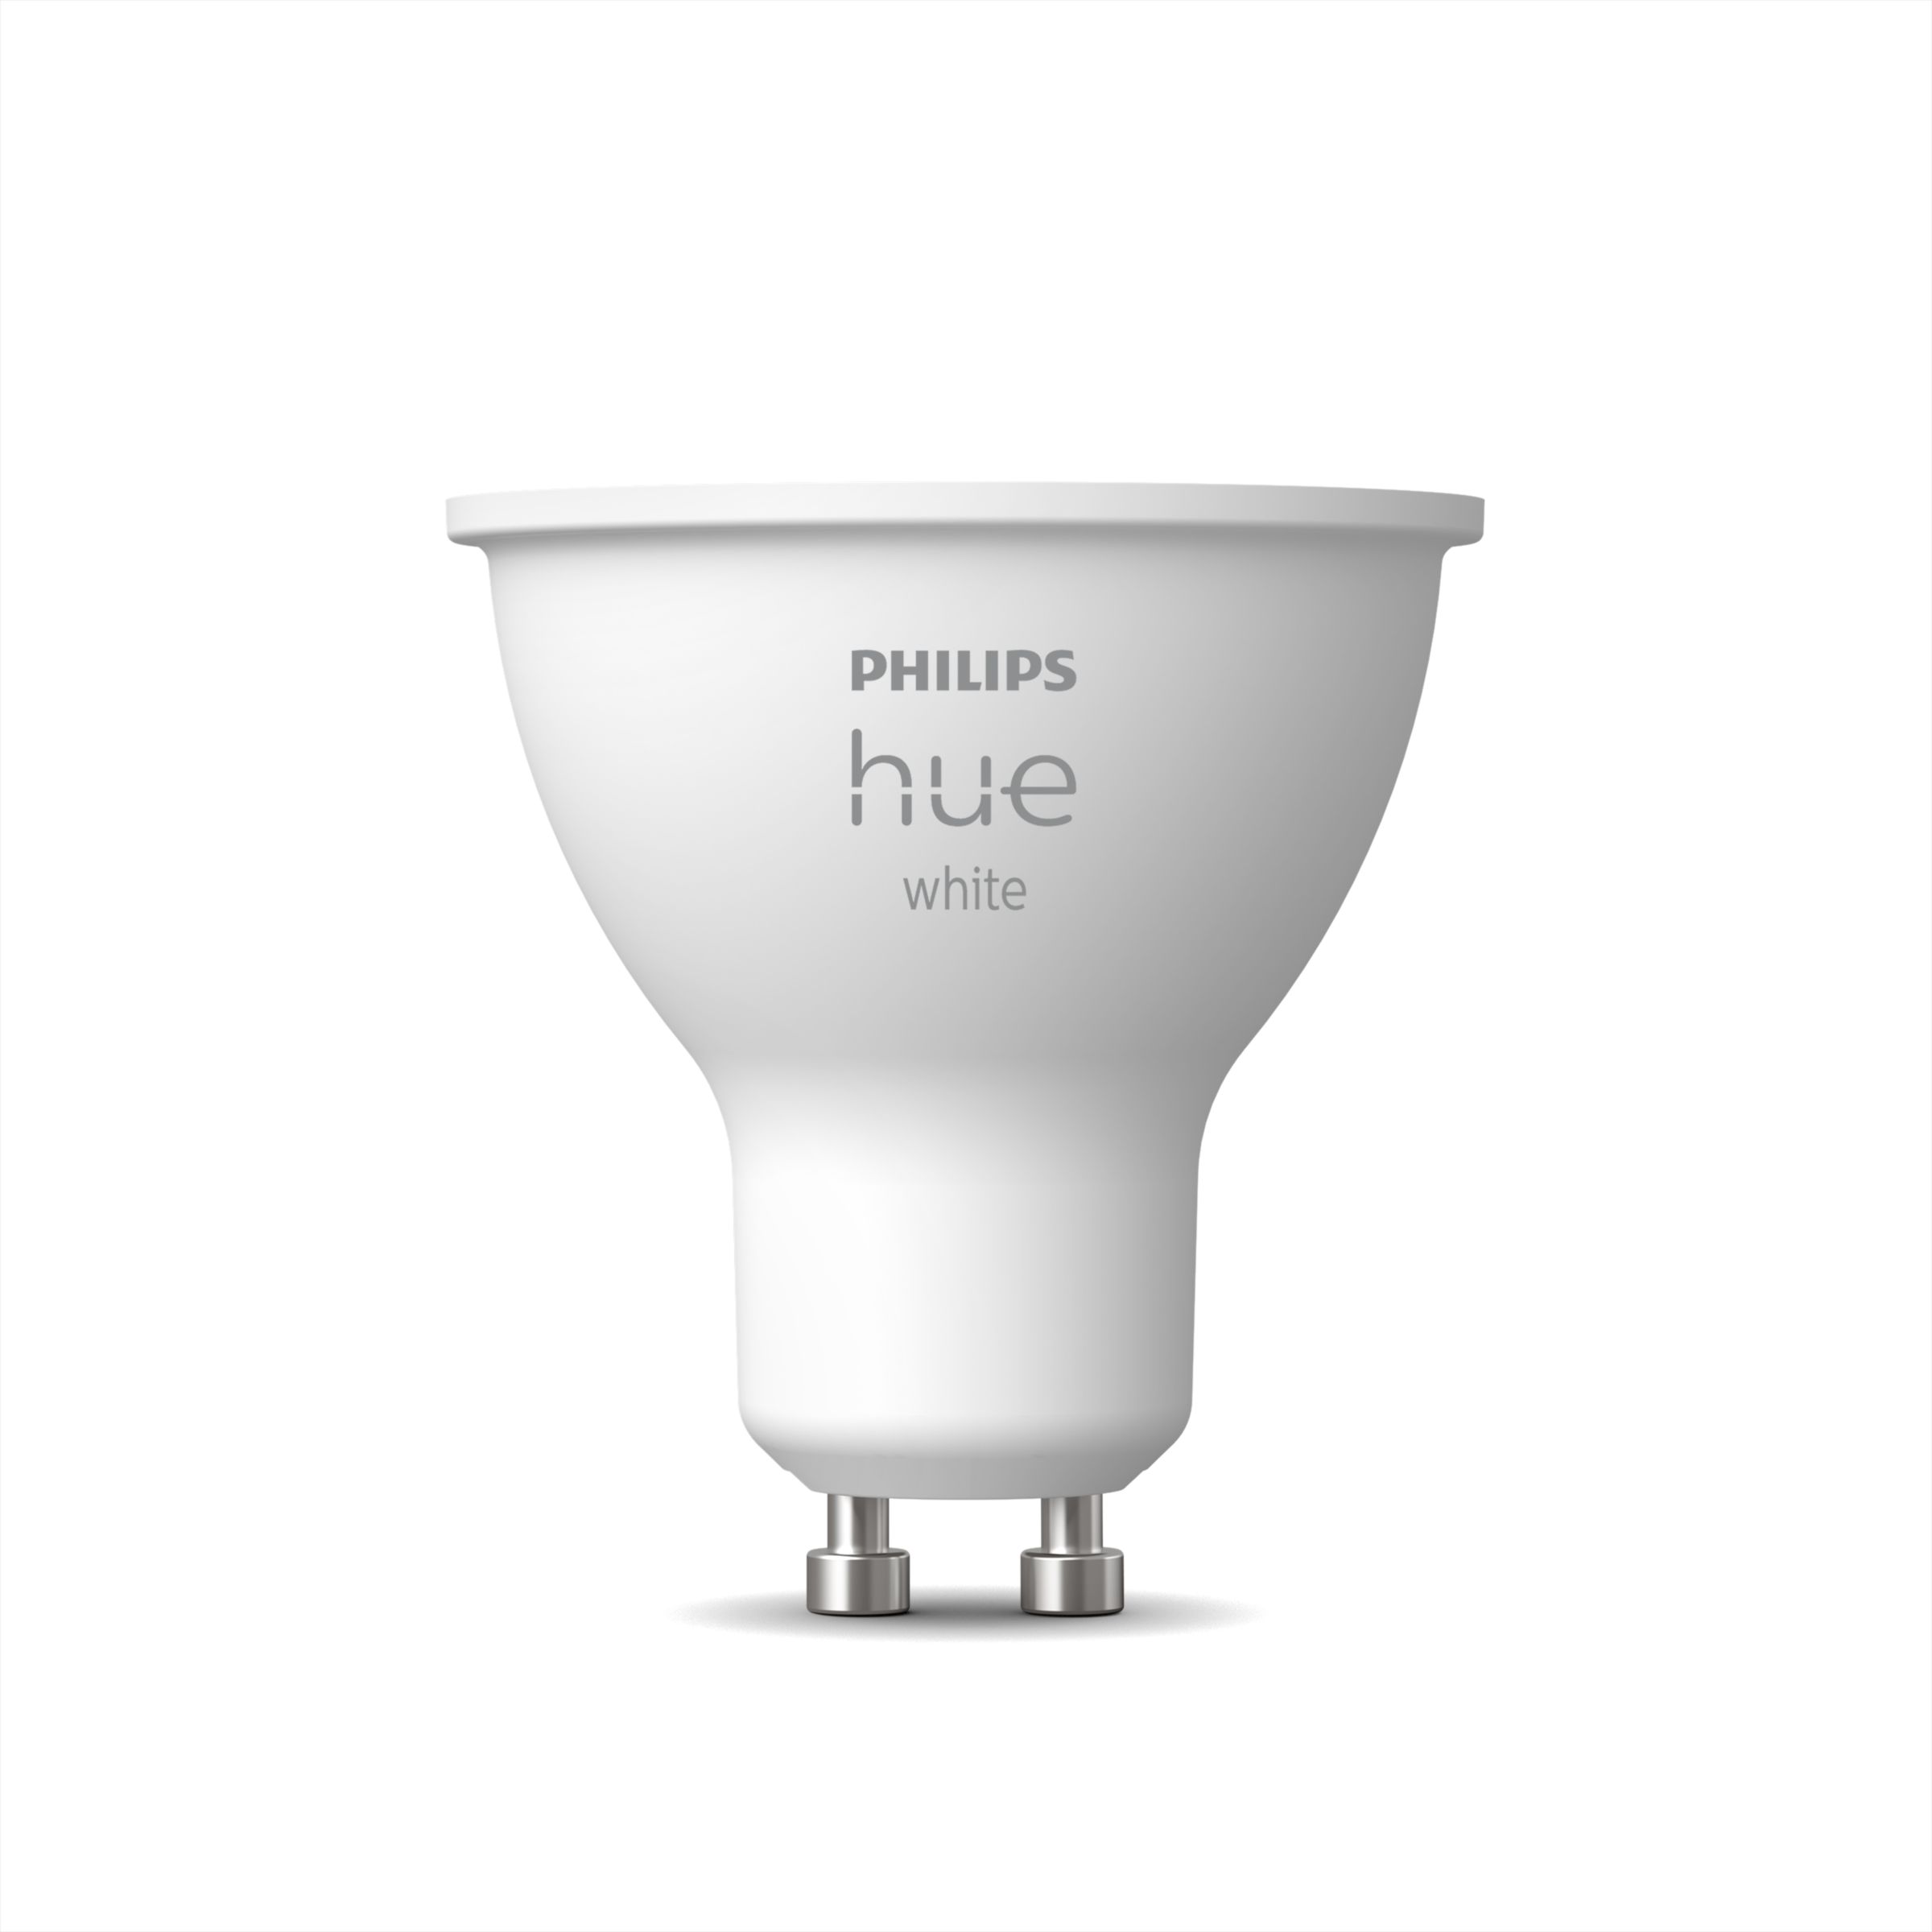 spons gunstig Bedelen Smart bulbs | Philips Hue NL